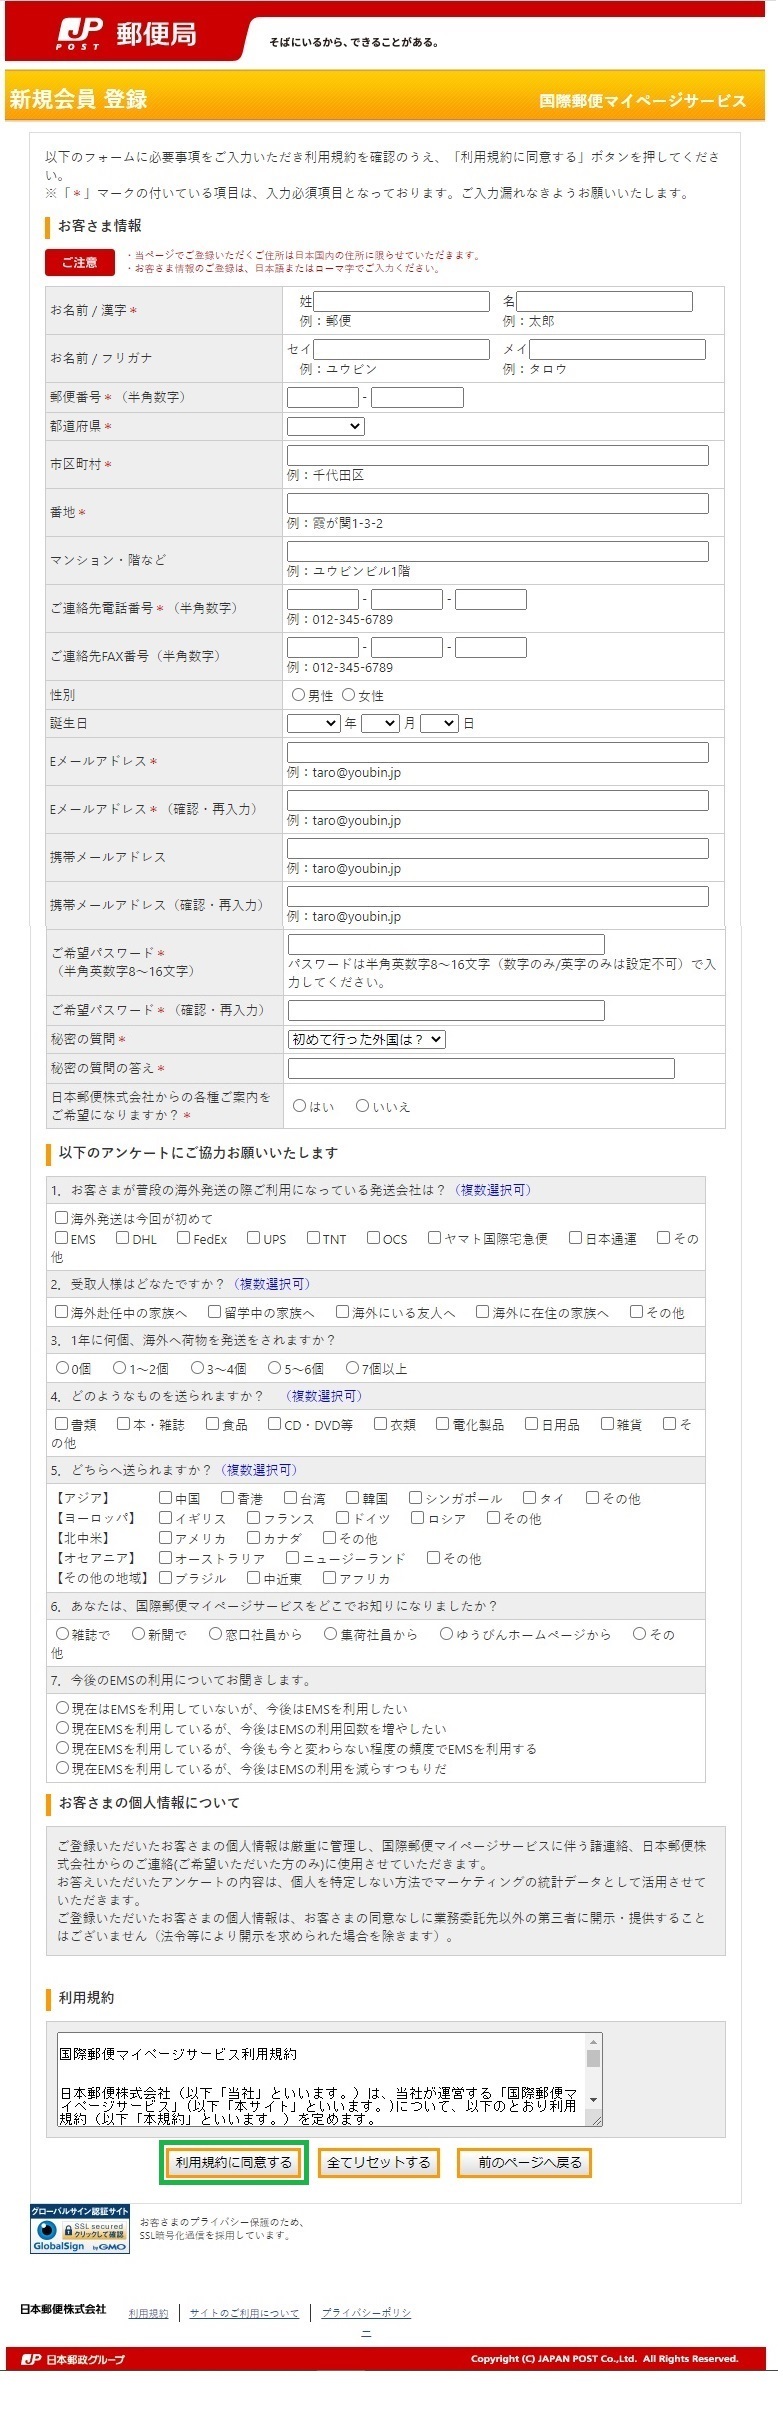 日本から台湾へ荷物を送る 国際郵便マイページサービス Pc版その ヨカヨカタイワン